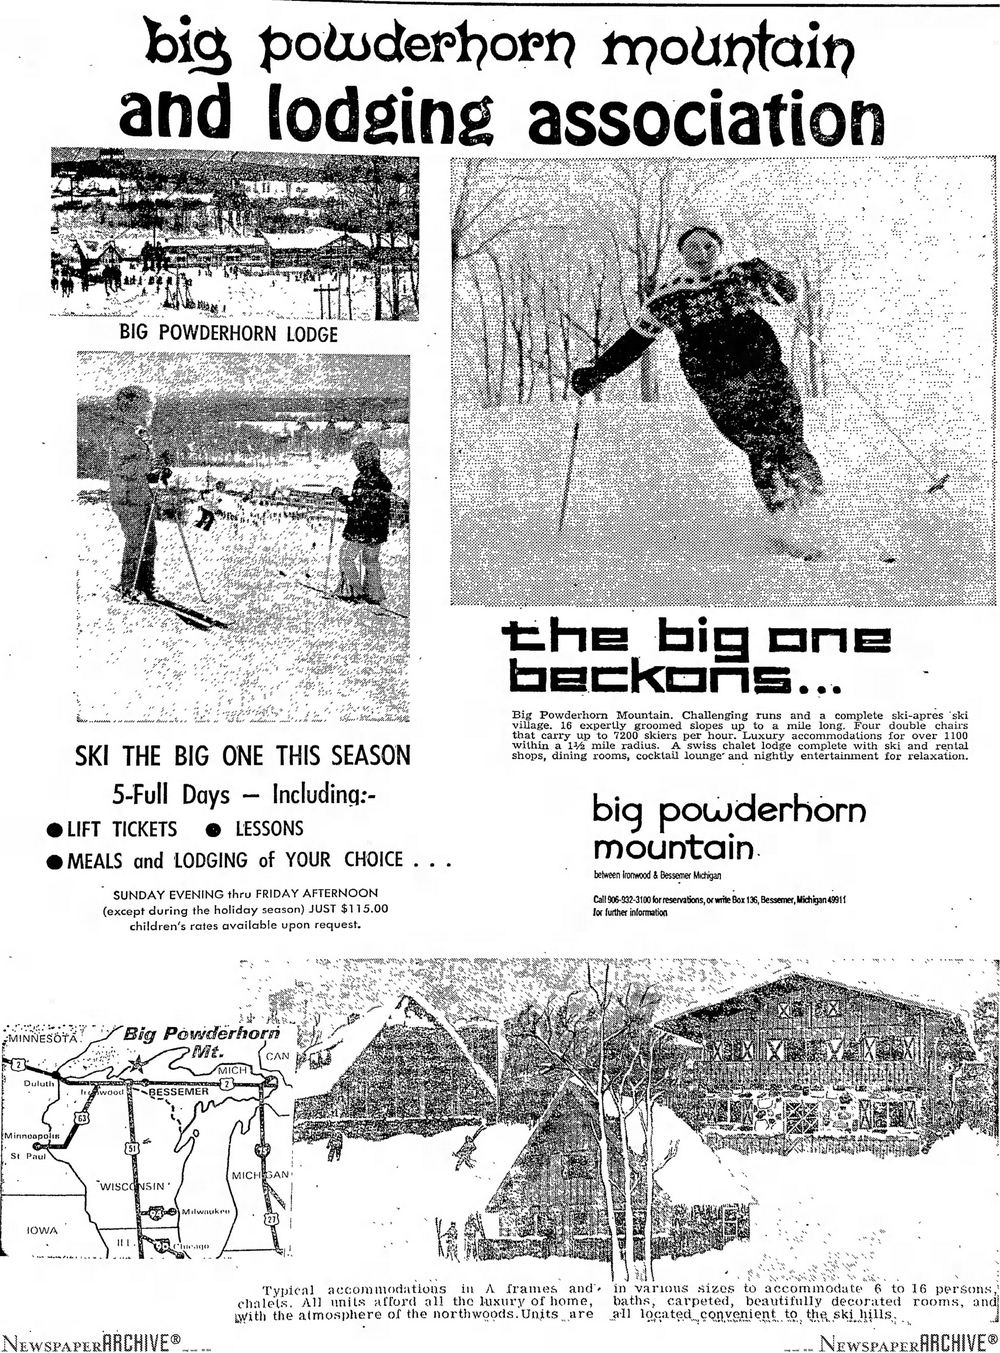 Big Powderhorn Lodging Association - 1973 Full Page Ad